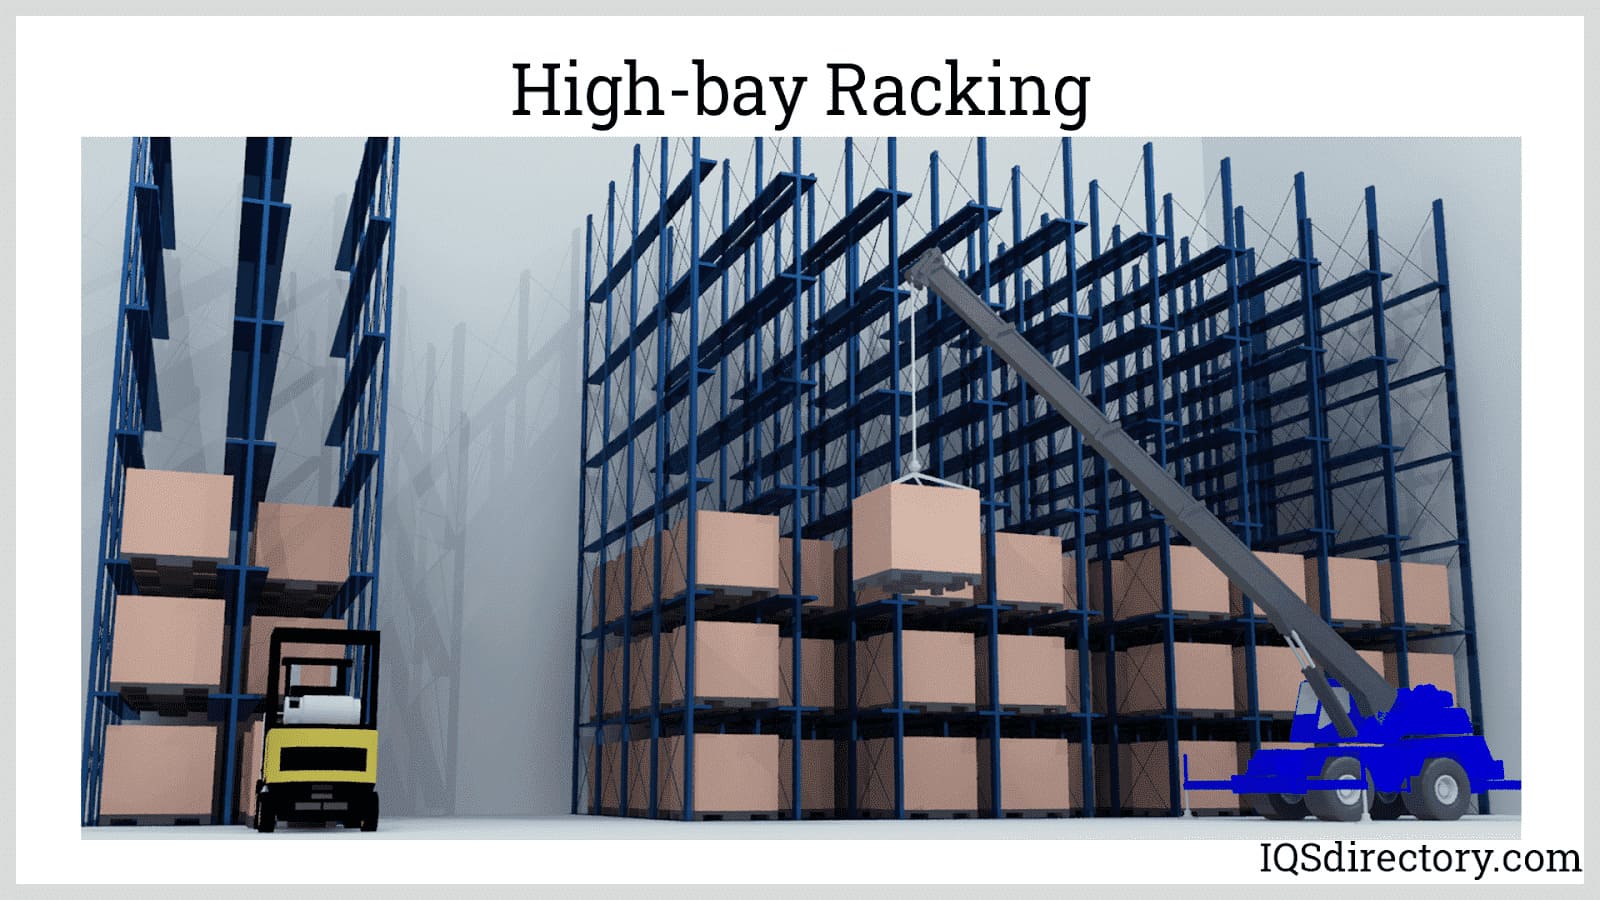 High-bay Racking